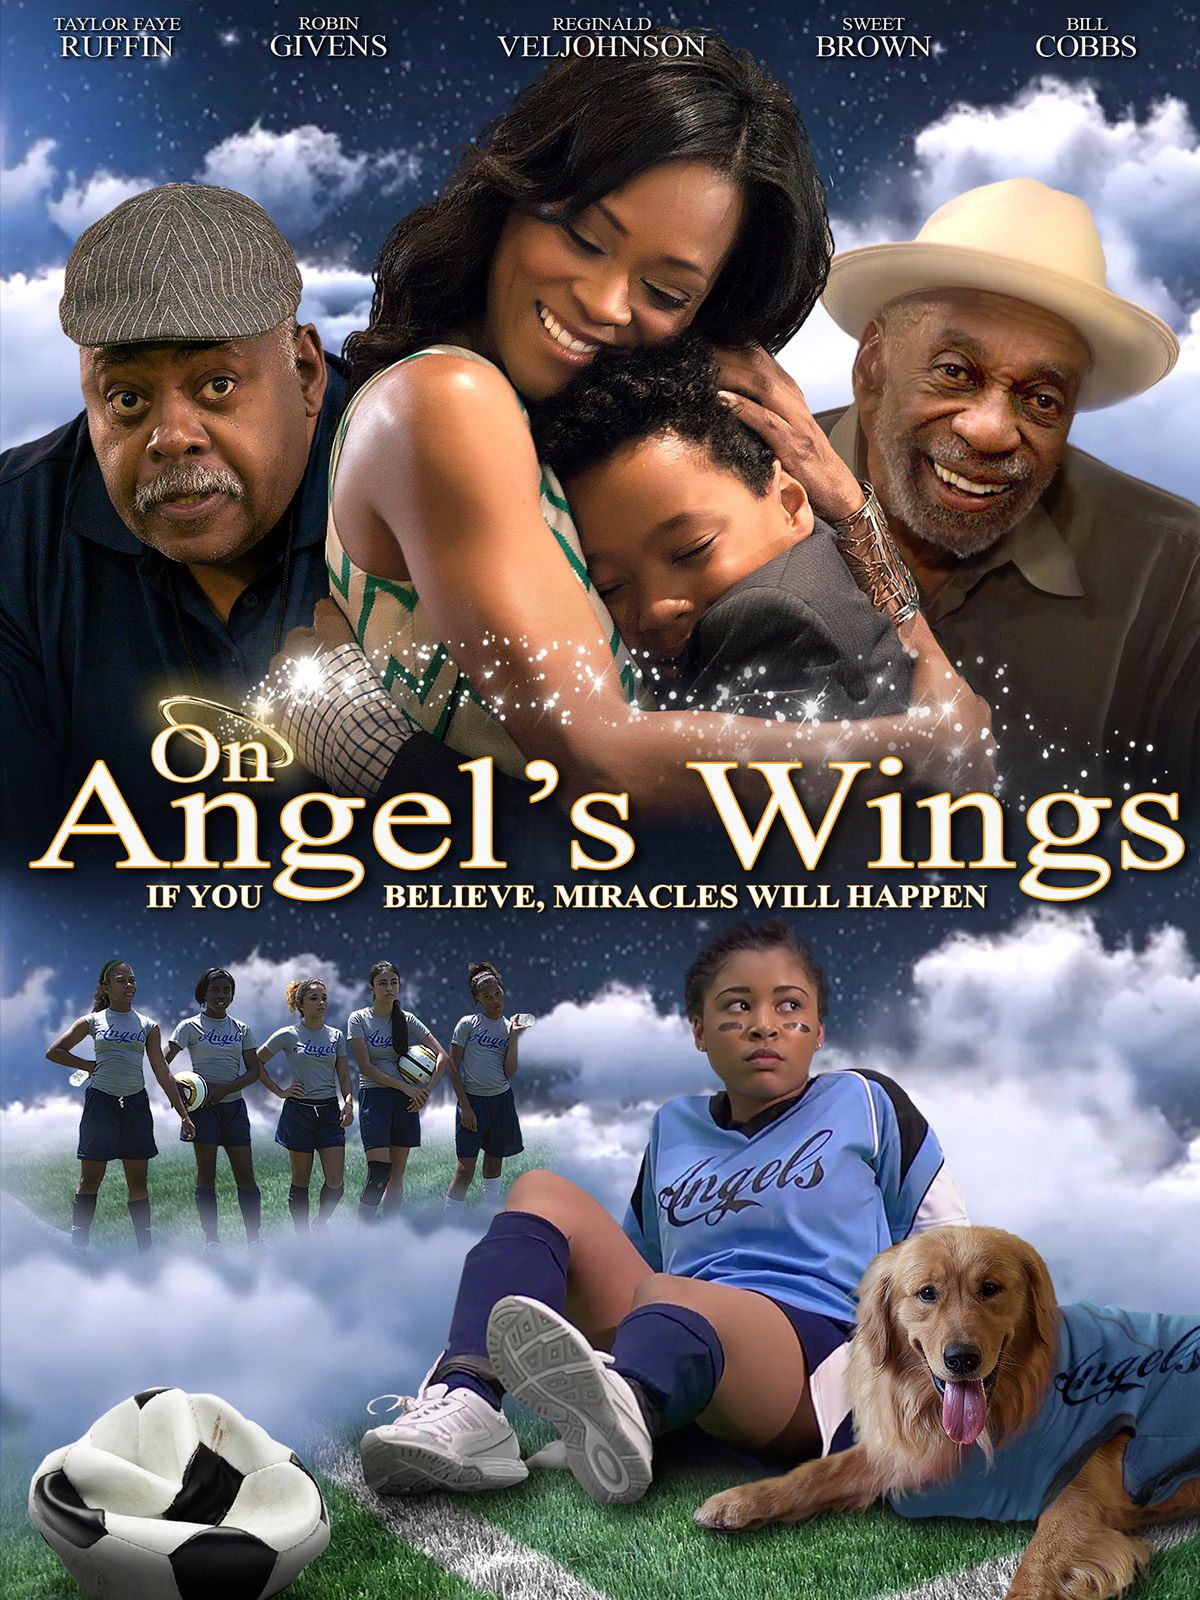 Keyart for the movie On Angel’s Wings